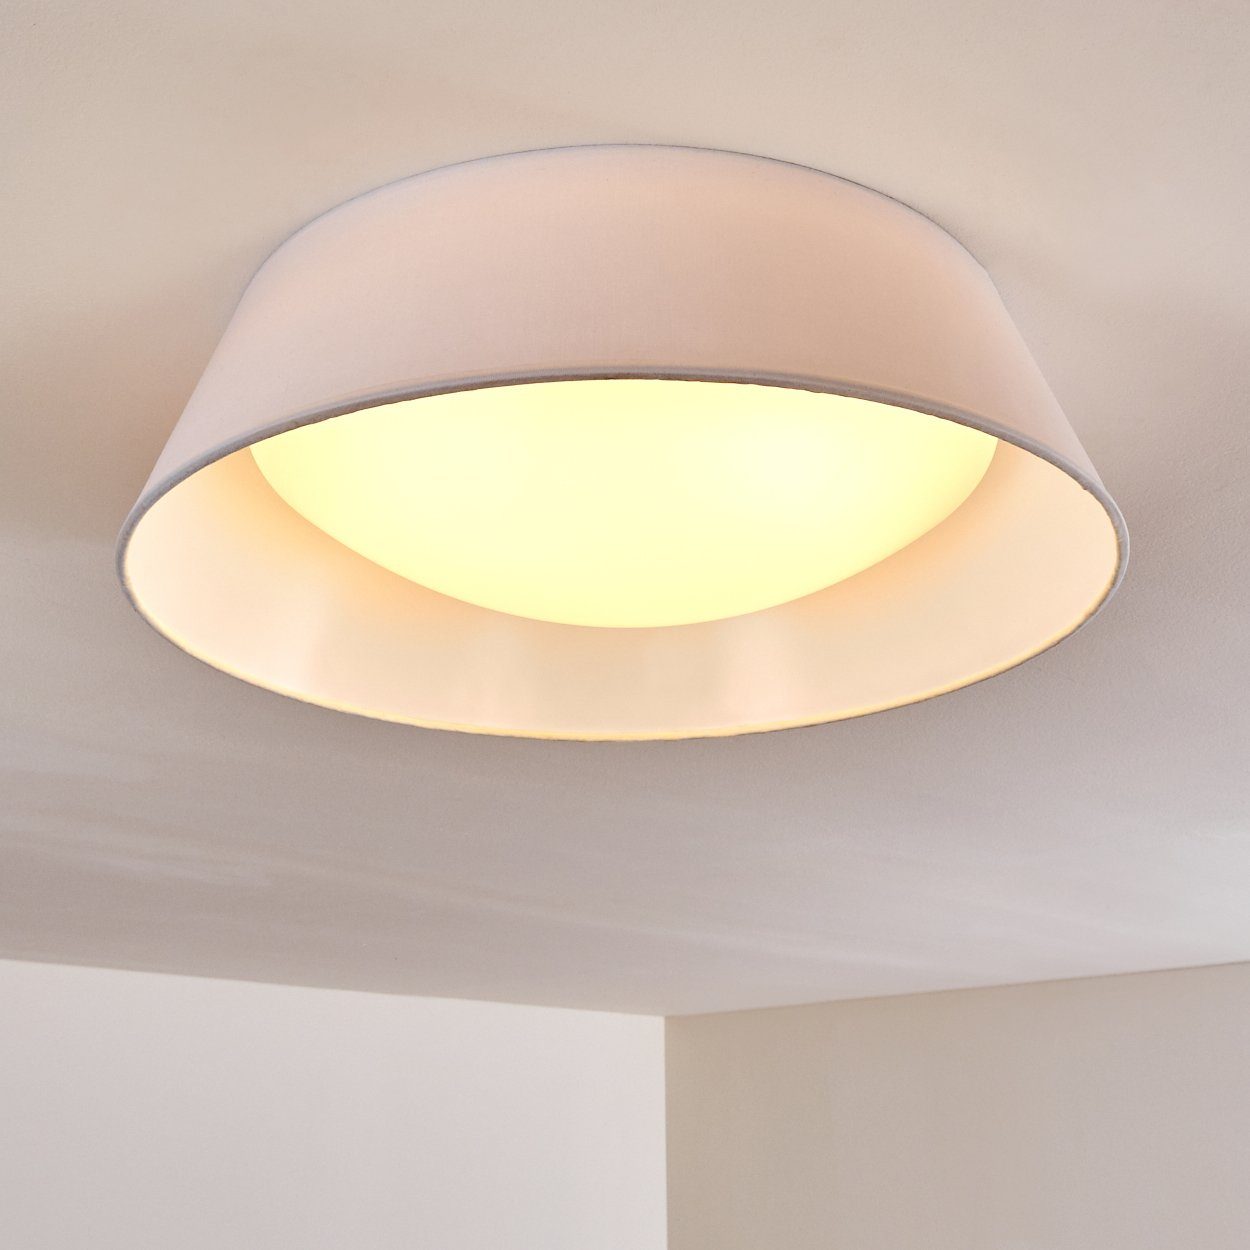 Deckenleuchte weiß LED Lampen Beleuchtung Wohn Design hofstein Decken Schlaf Zimmer Stoff